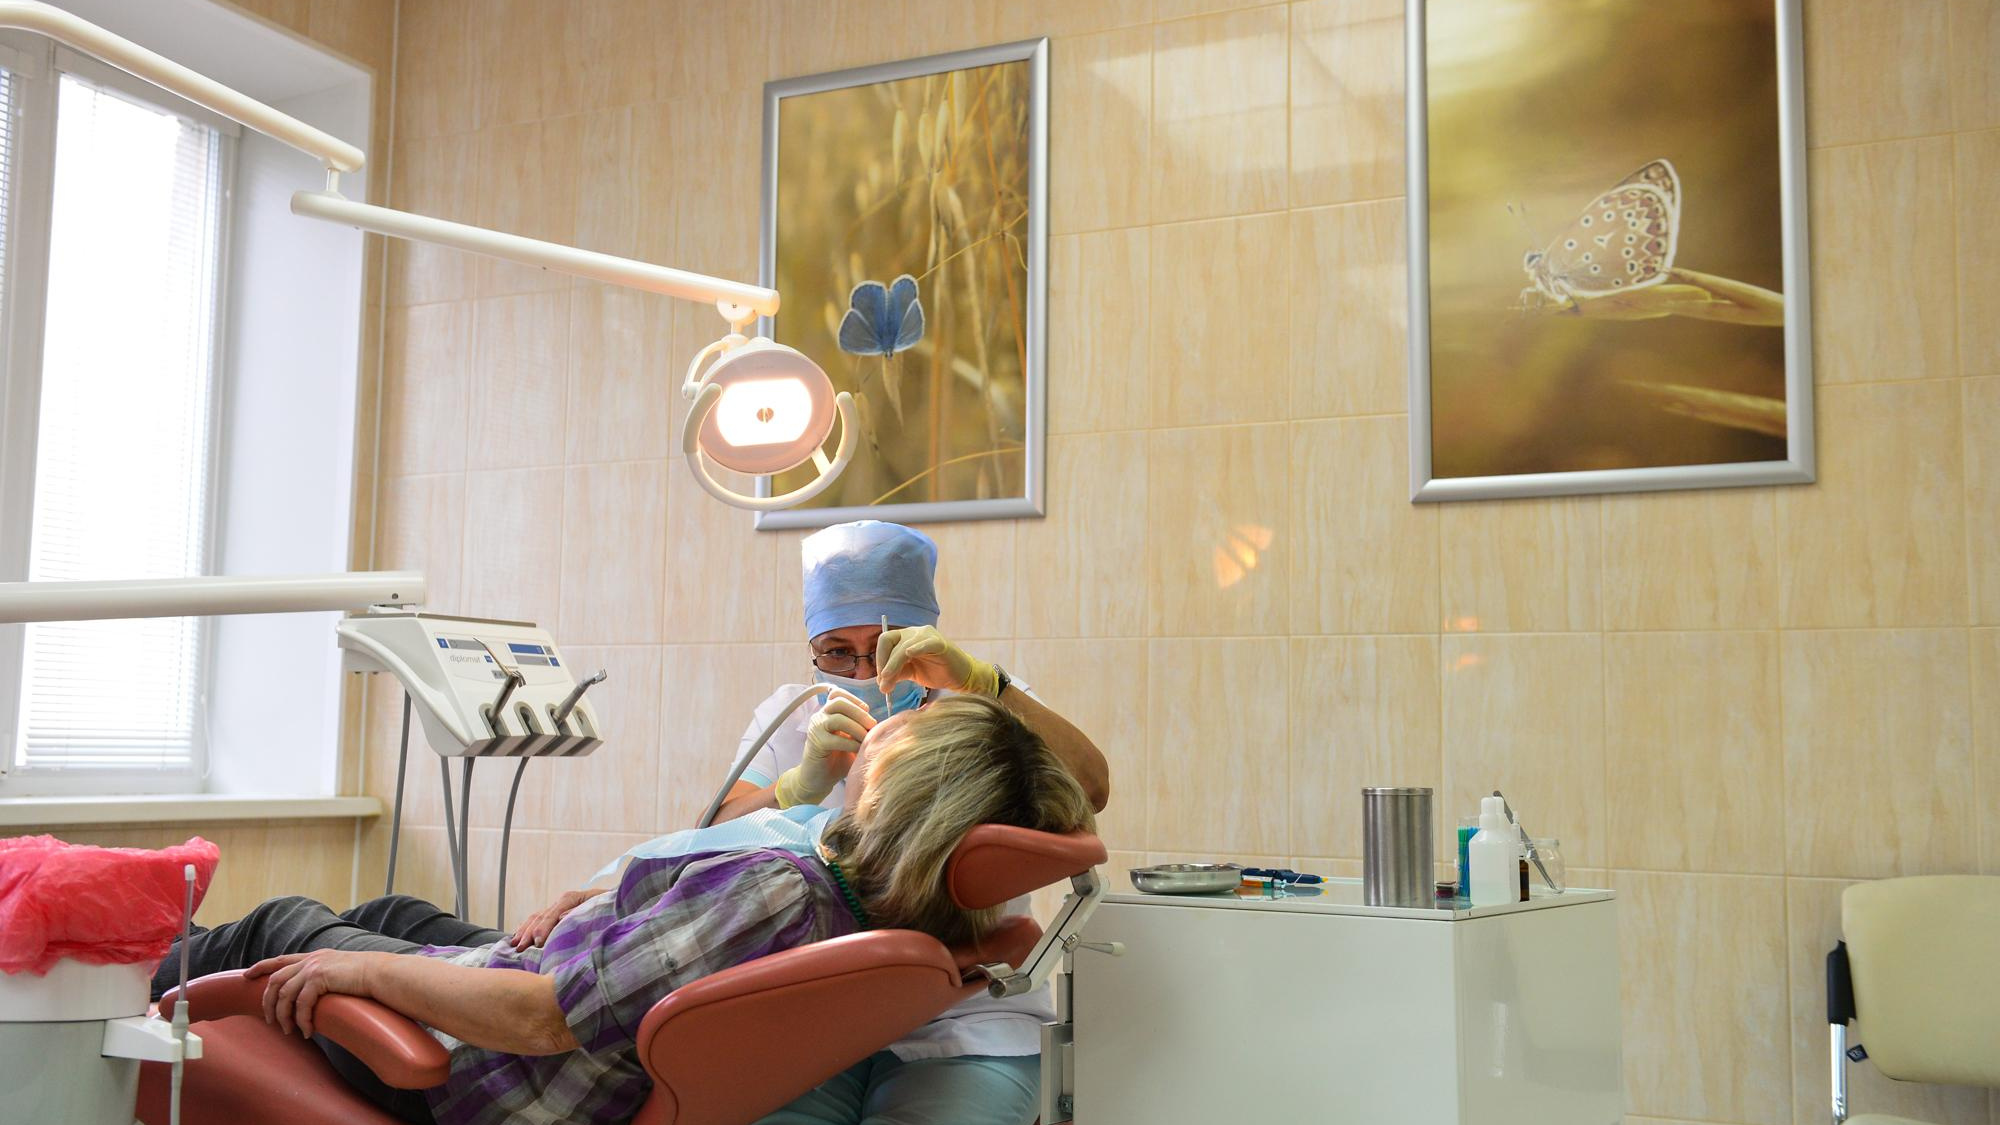 Пломба по цене айфона? Московские стоматологи объяснили, почему лечить зубы стало так дорого